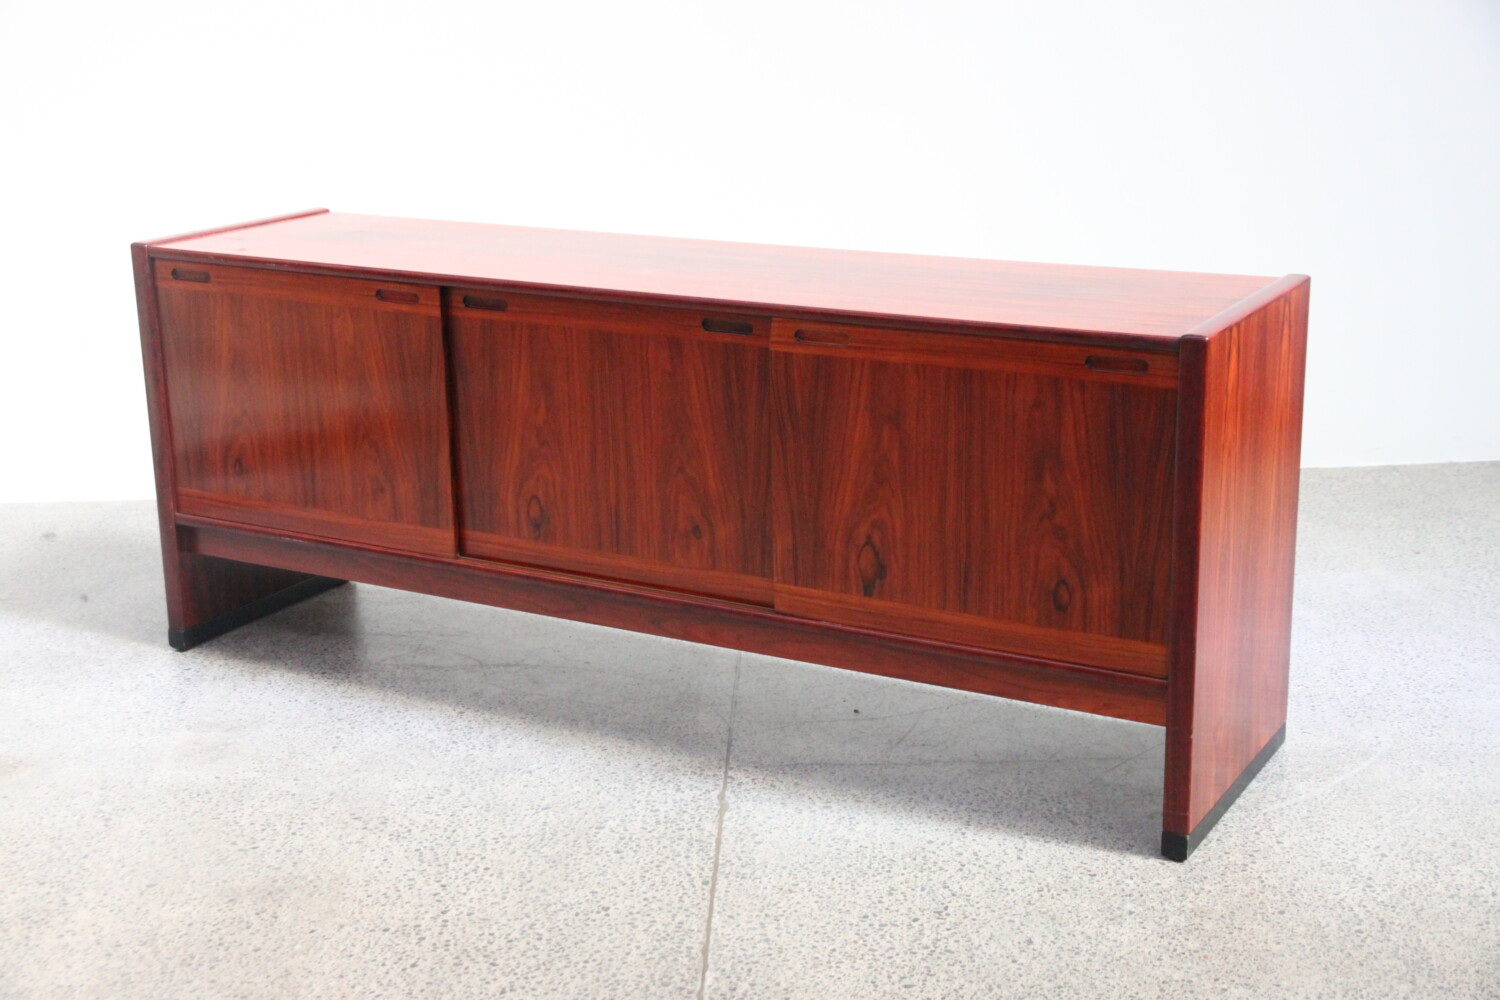 Rosewood Sideboard by Skovby sold